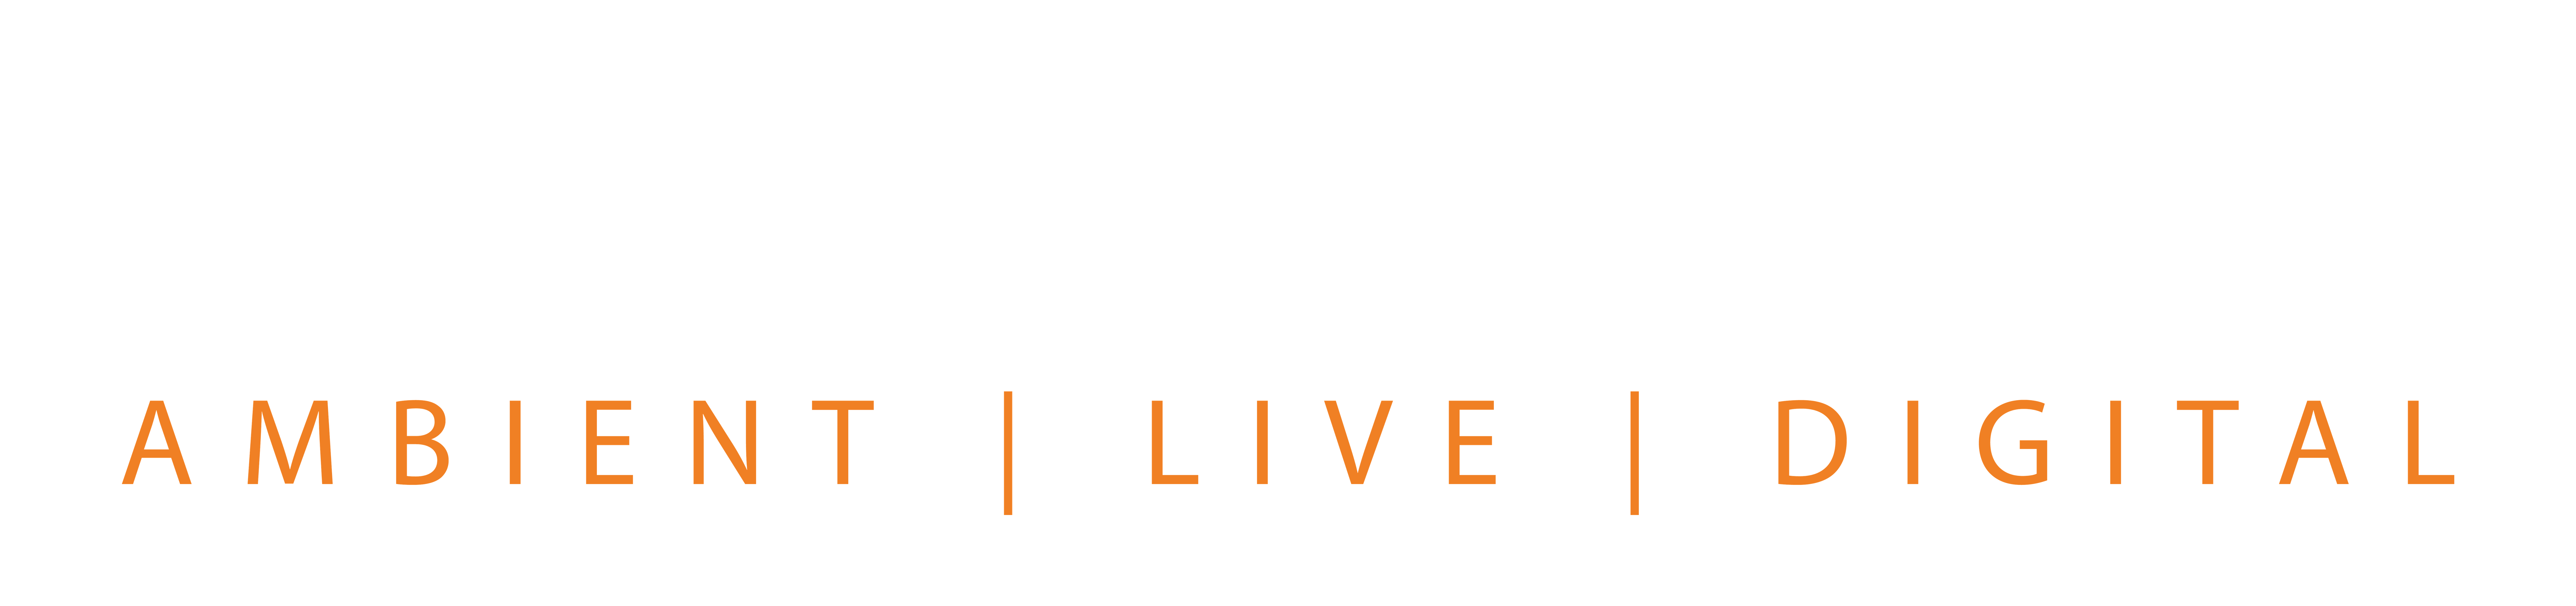 Touchpoint Media GmbH Logo